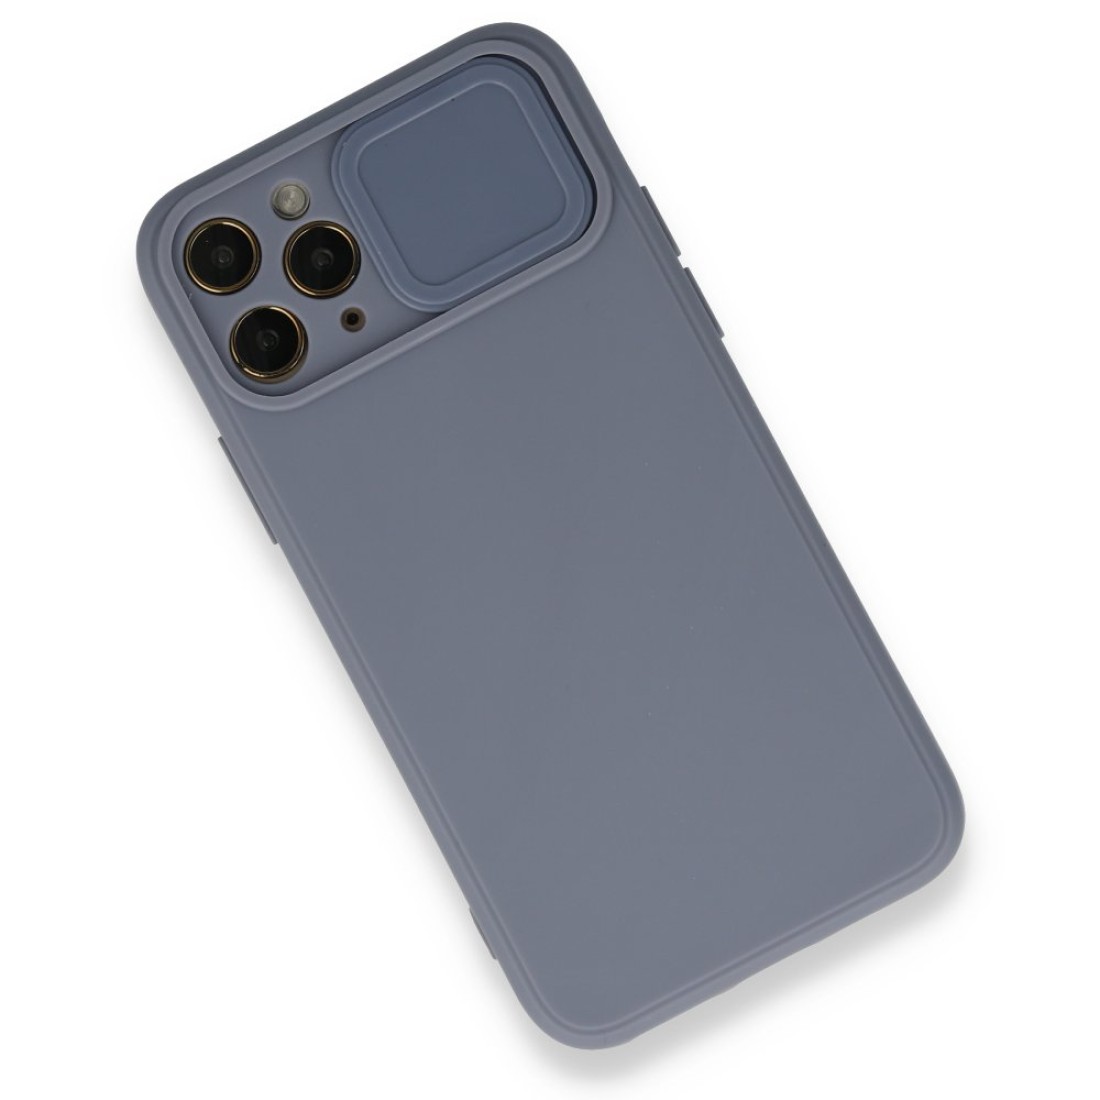 Apple iPhone 11 Pro Max Kılıf Color Lens Silikon - Gri